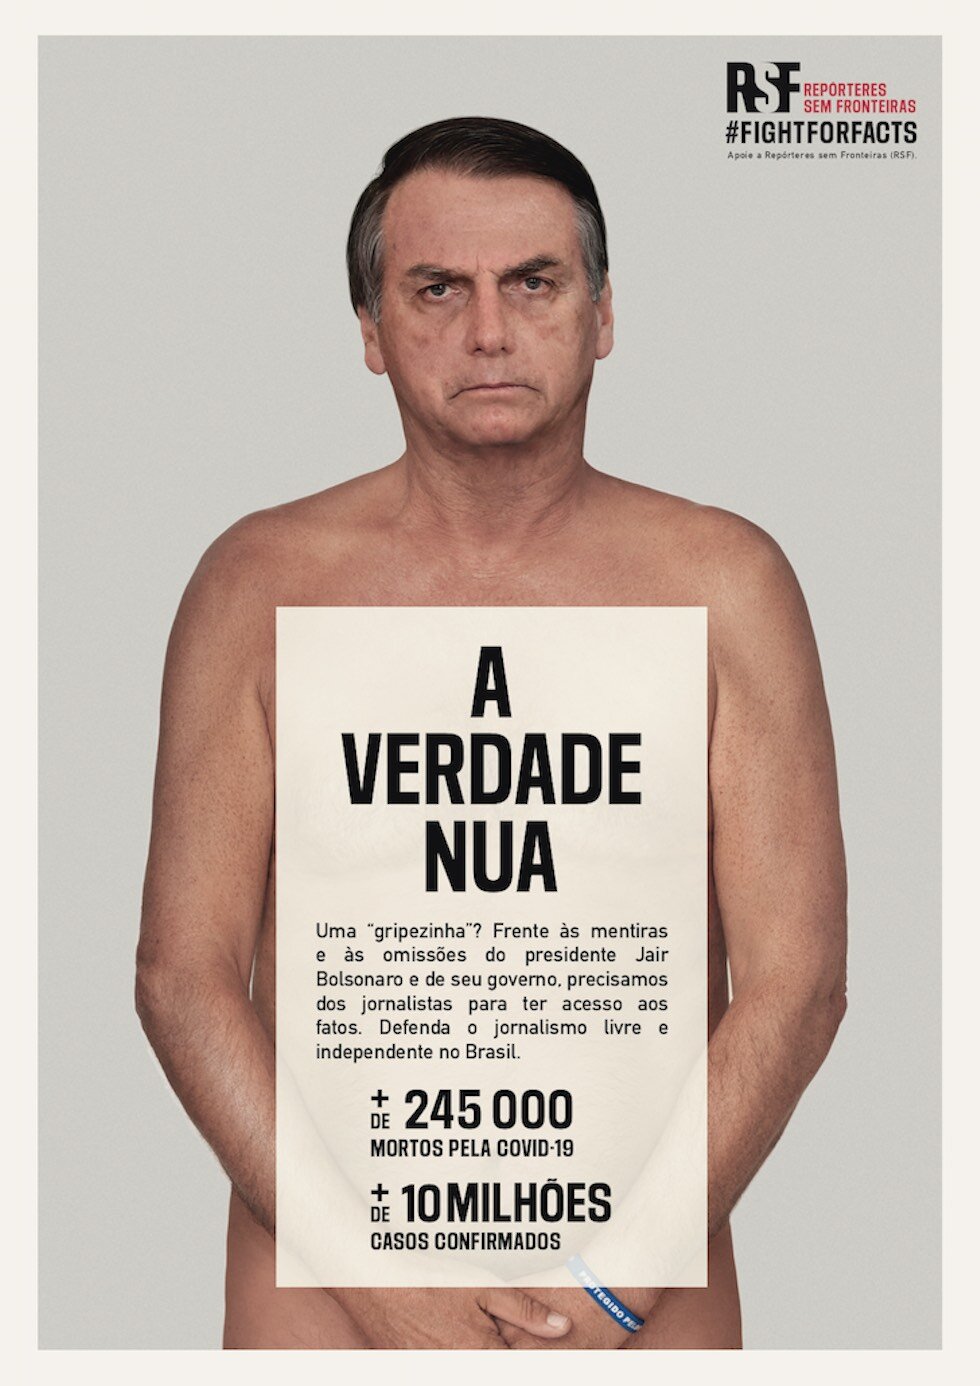 Fotomontagem do presidente Jair Bolsonaro sem roupa, para a campanha “A verdade nua”, da RSF. Foto: Divulgação